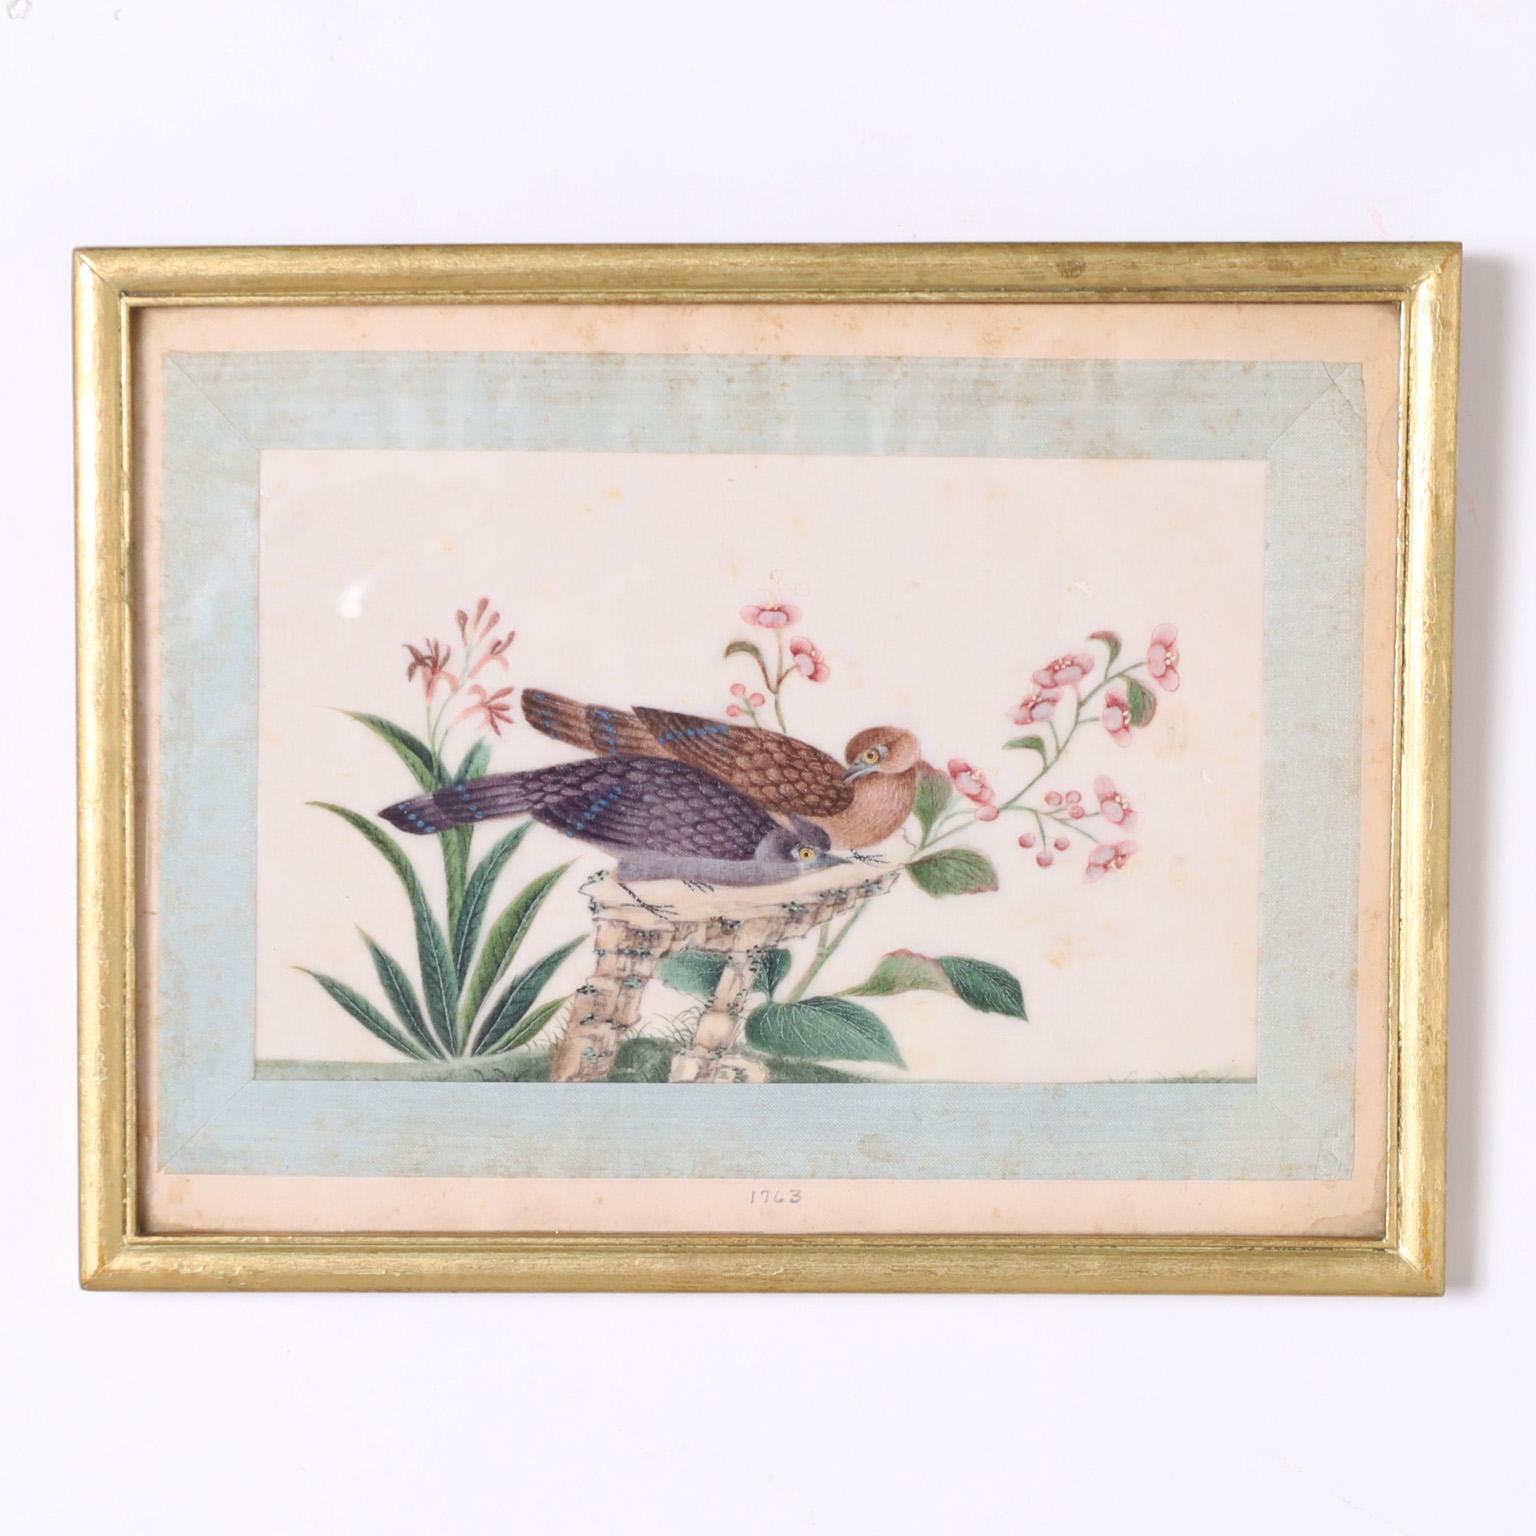 Rare et remarquable ensemble de huit peintures d'oiseaux sur soie du XVIIIe siècle, exécutées à la tempera à l'œuf dans un style délicat et coloré. Note historique intéressante au dos de l'un d'entre eux. Présenté sous verre dans un cadre en bois